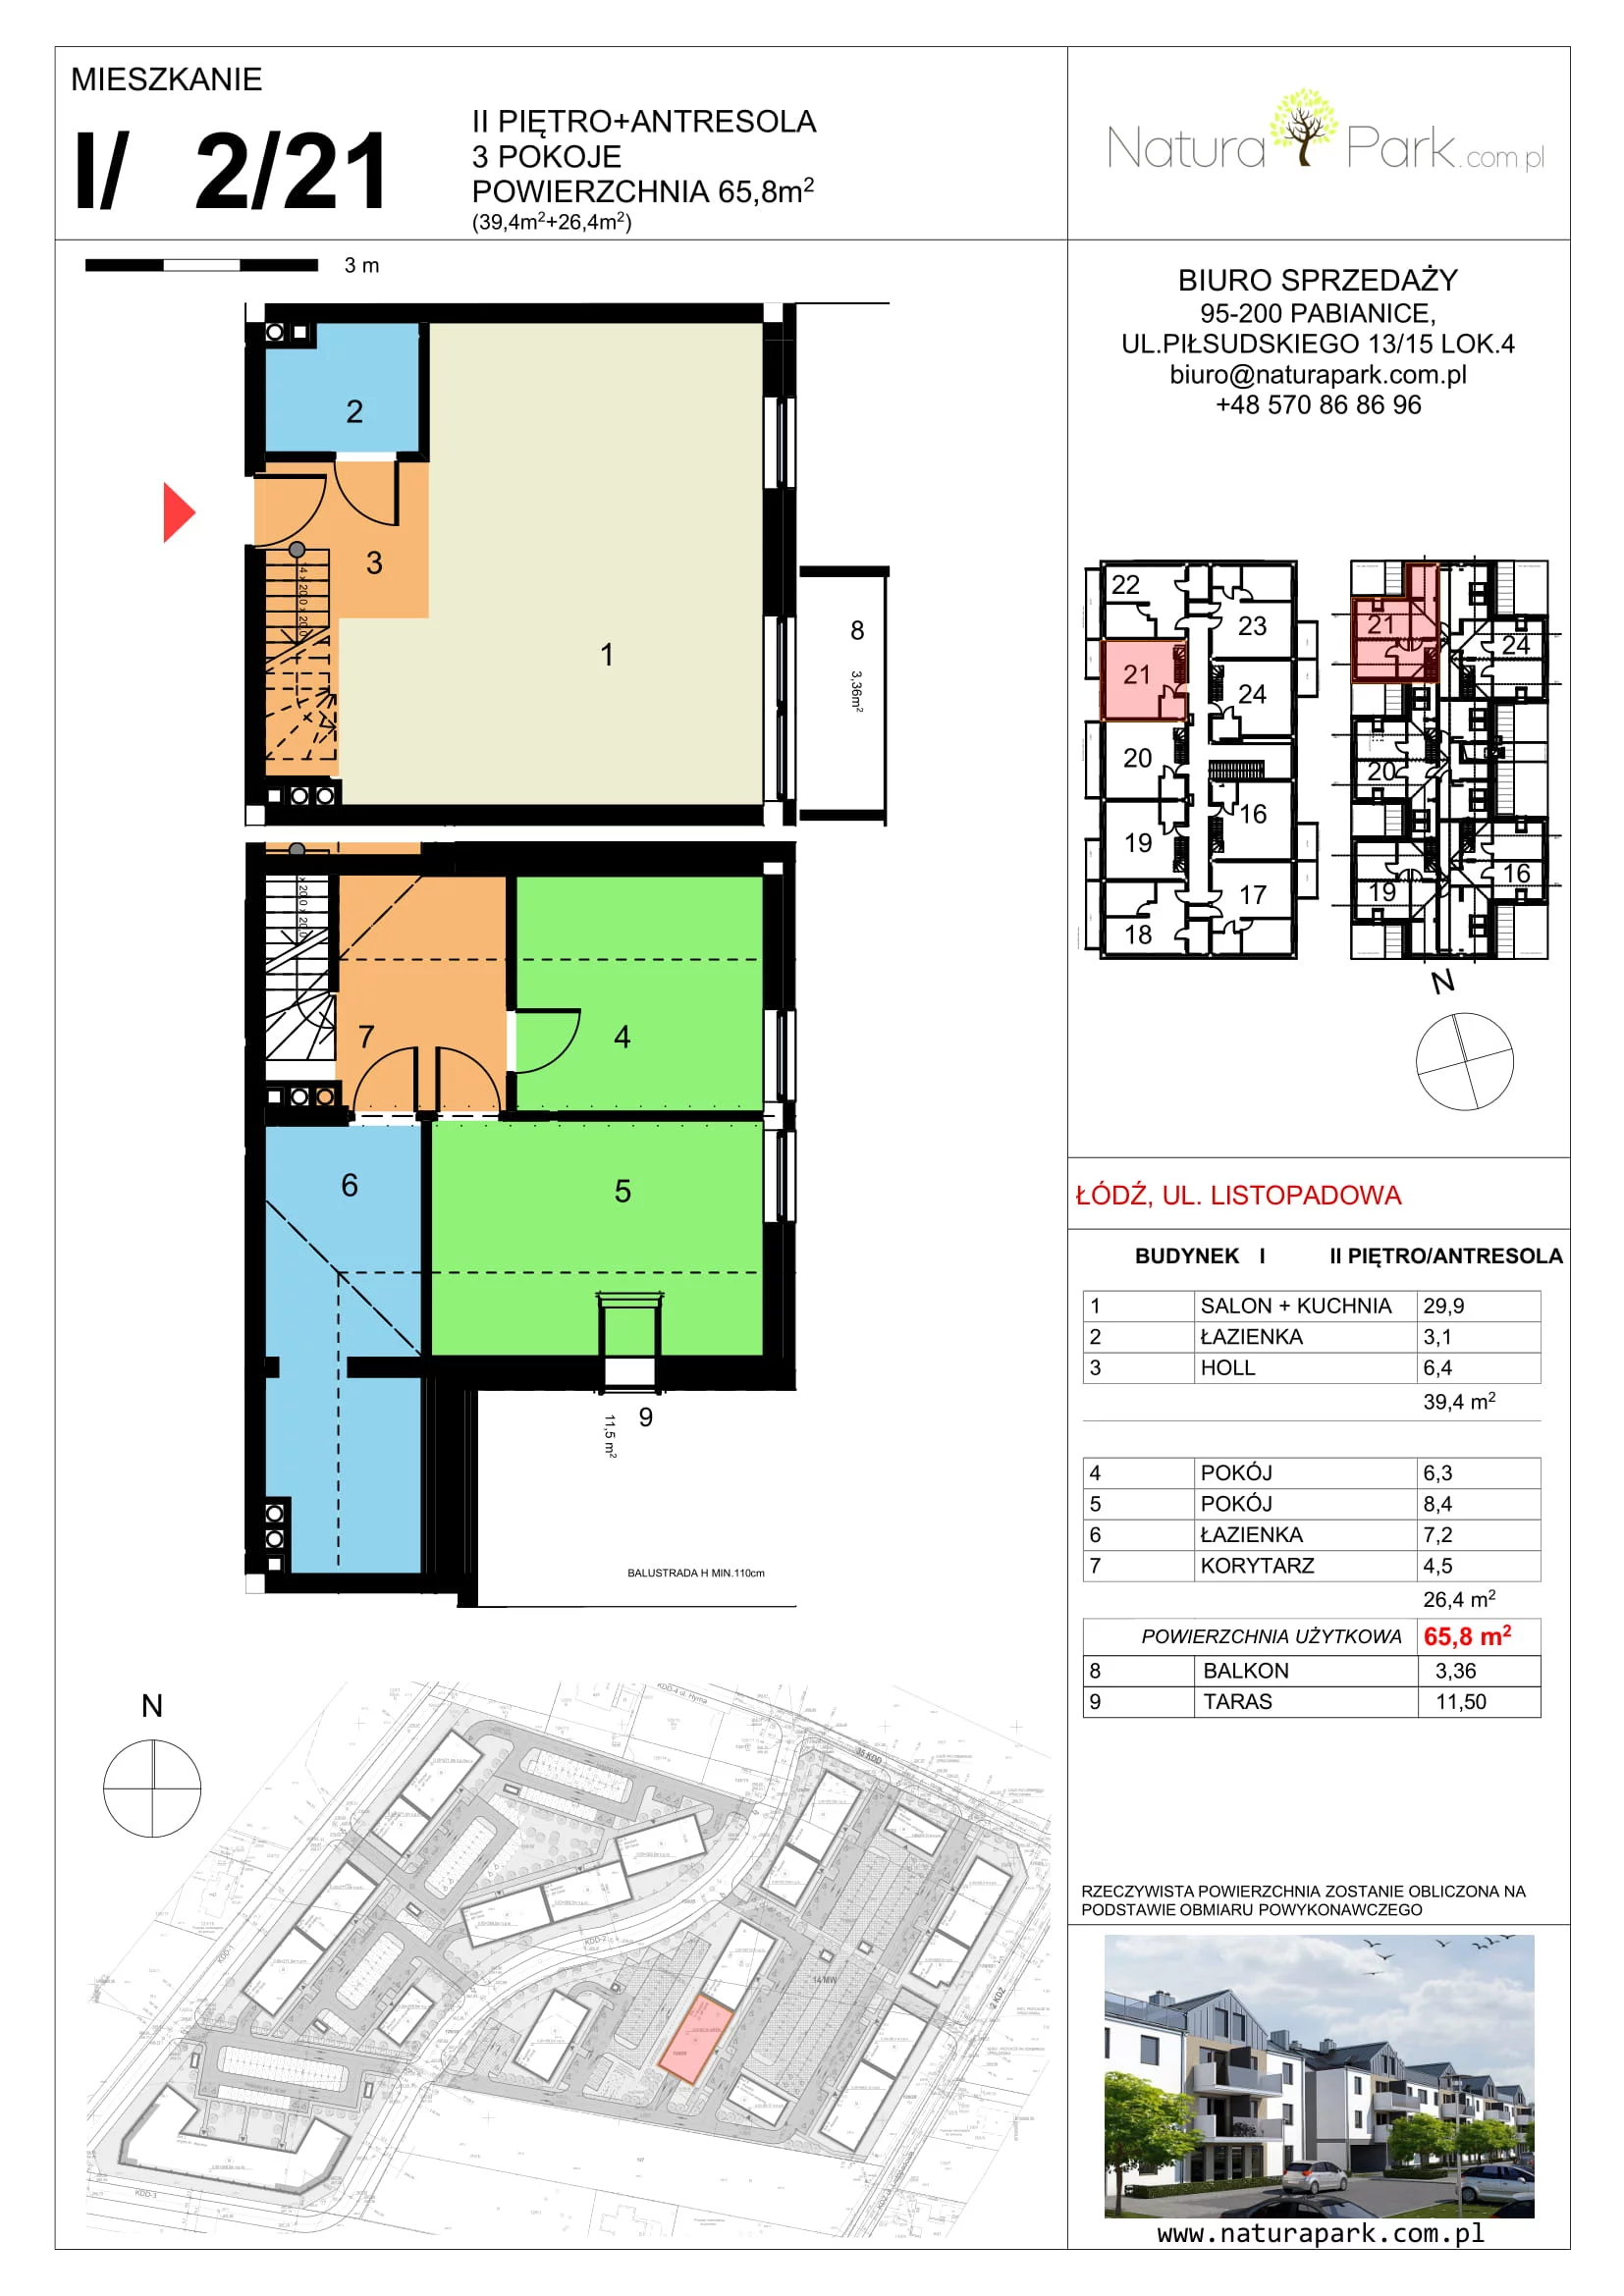 Mieszkanie 65,33 m², piętro 2, oferta nr I/2/21, Natura Park, Łódź, Widzew, Dolina Łódki, ul. Listopadowa